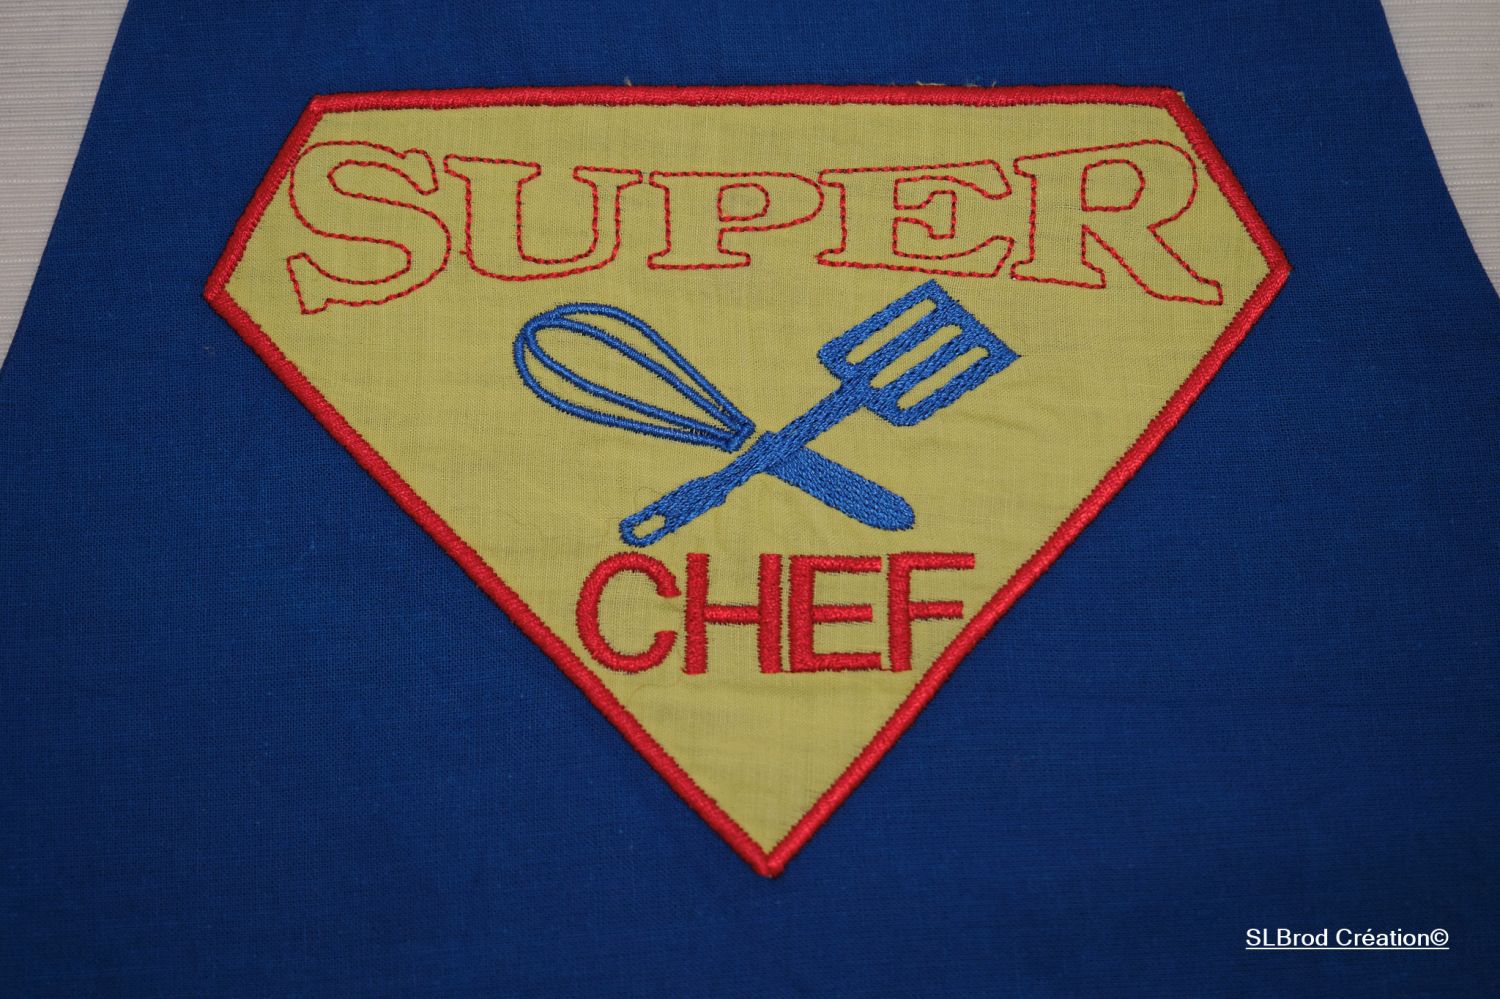 Super chef embroidered apron